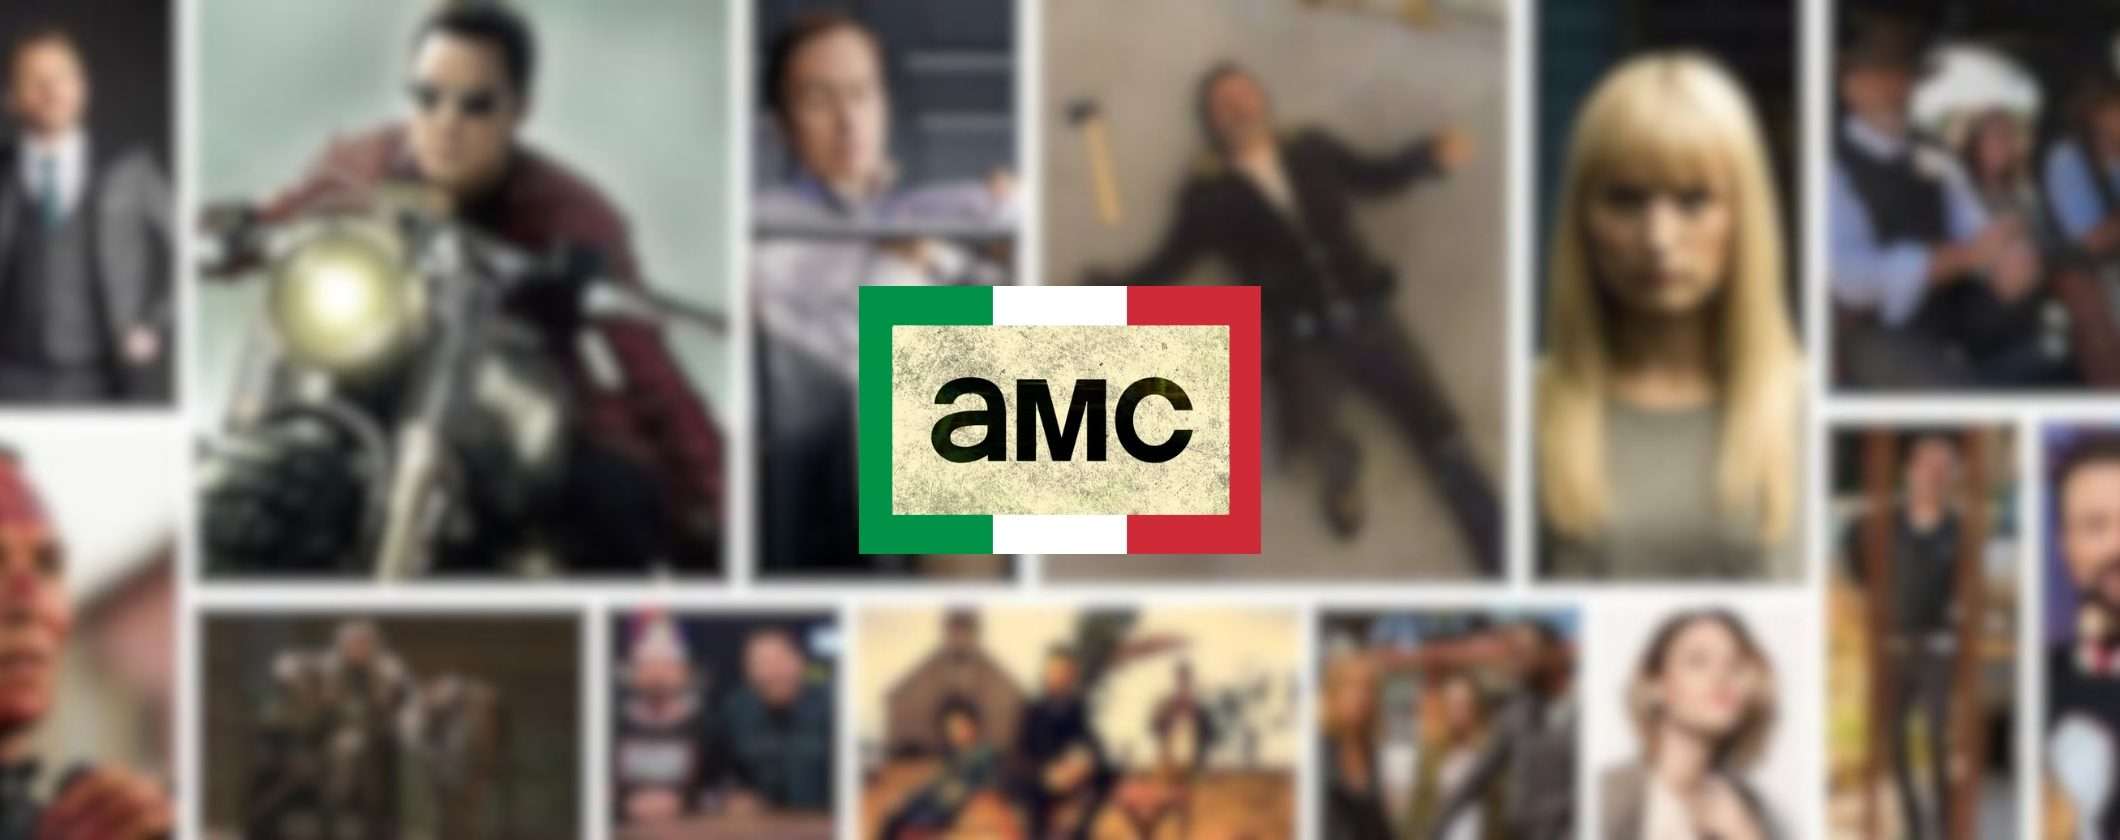 Come vedere film e serie TV in streaming su AMC dall'Italia